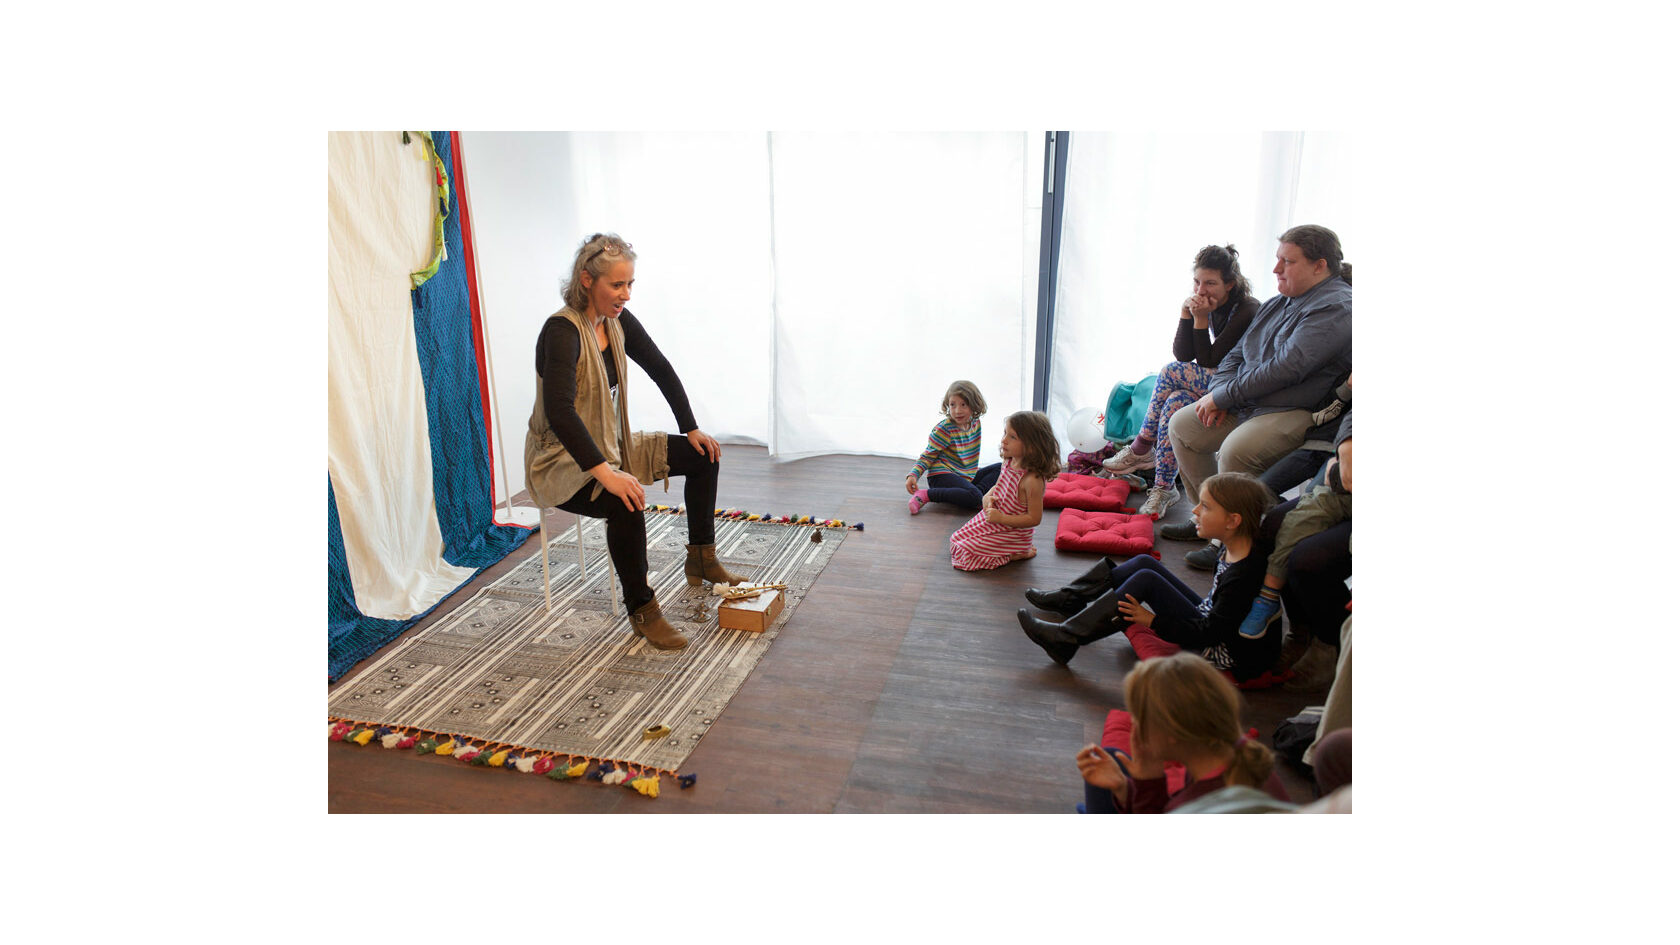 Eine Erzählerin vom Verein Erzählraum e. V. sitzt auf einem ausgerollten Teppich in einem Raum und erzählt vor Kindern und Erwachsenen, die ihr zuhören.